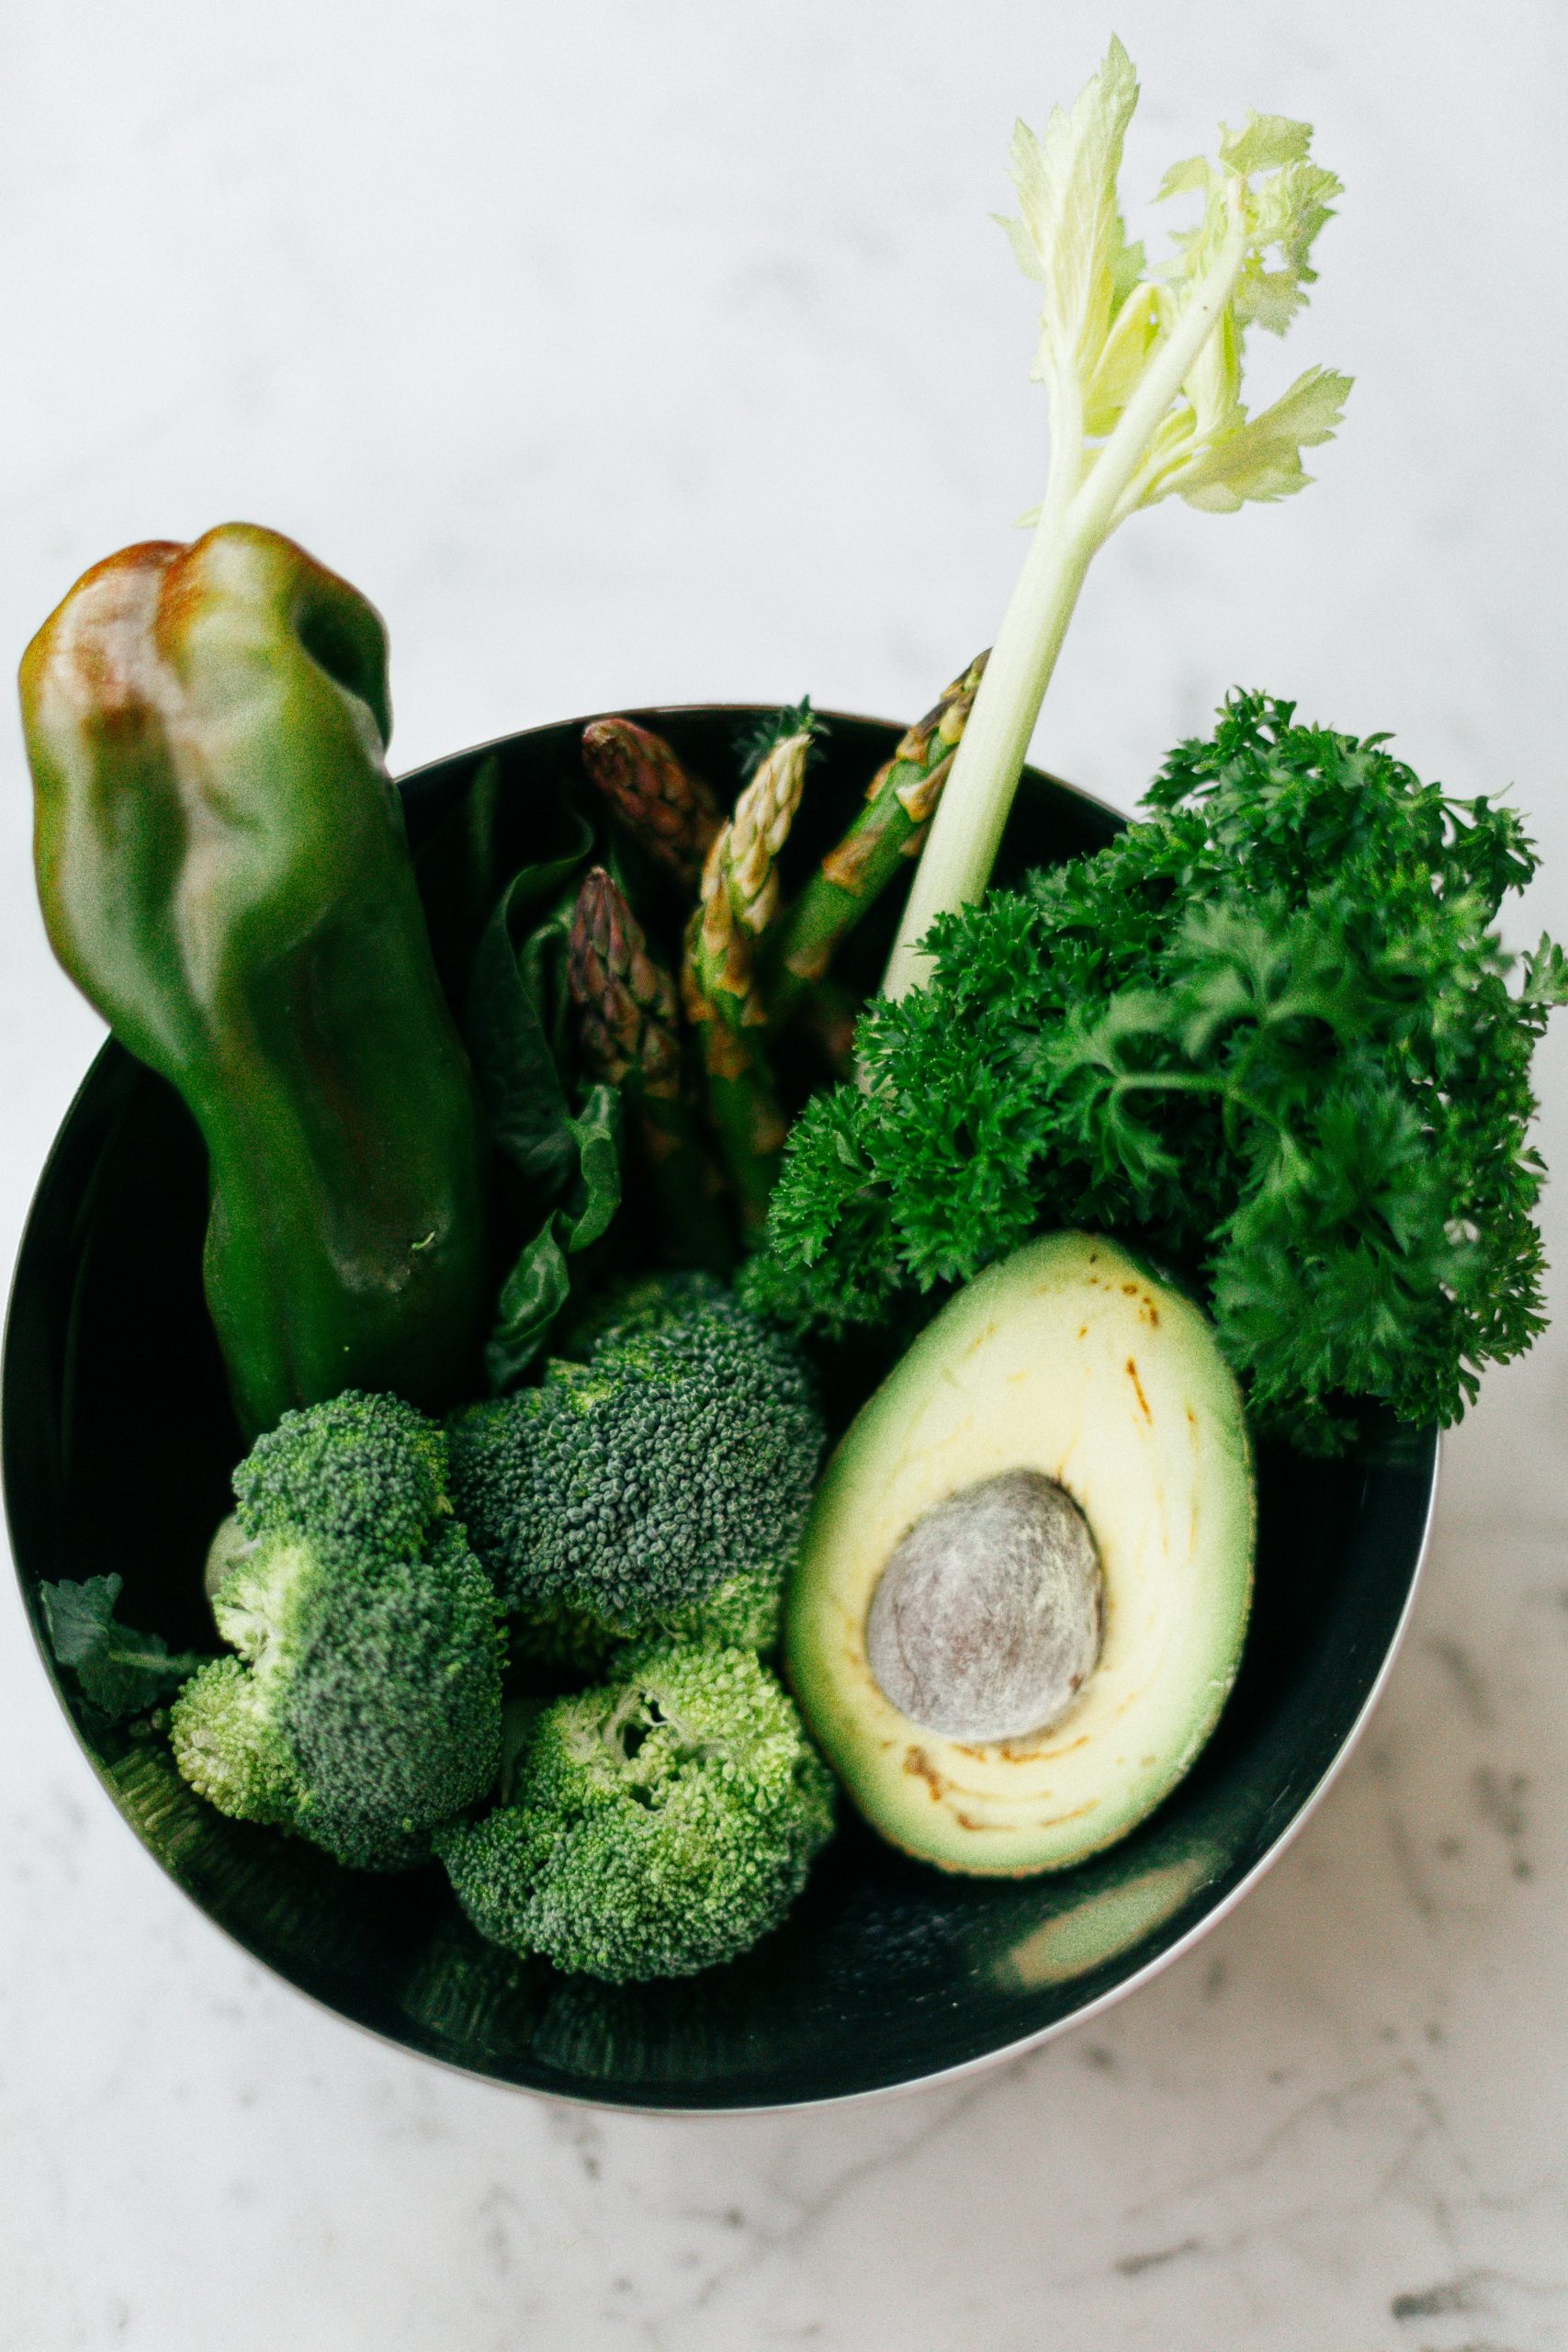 Plato de verduras para un menú saludable